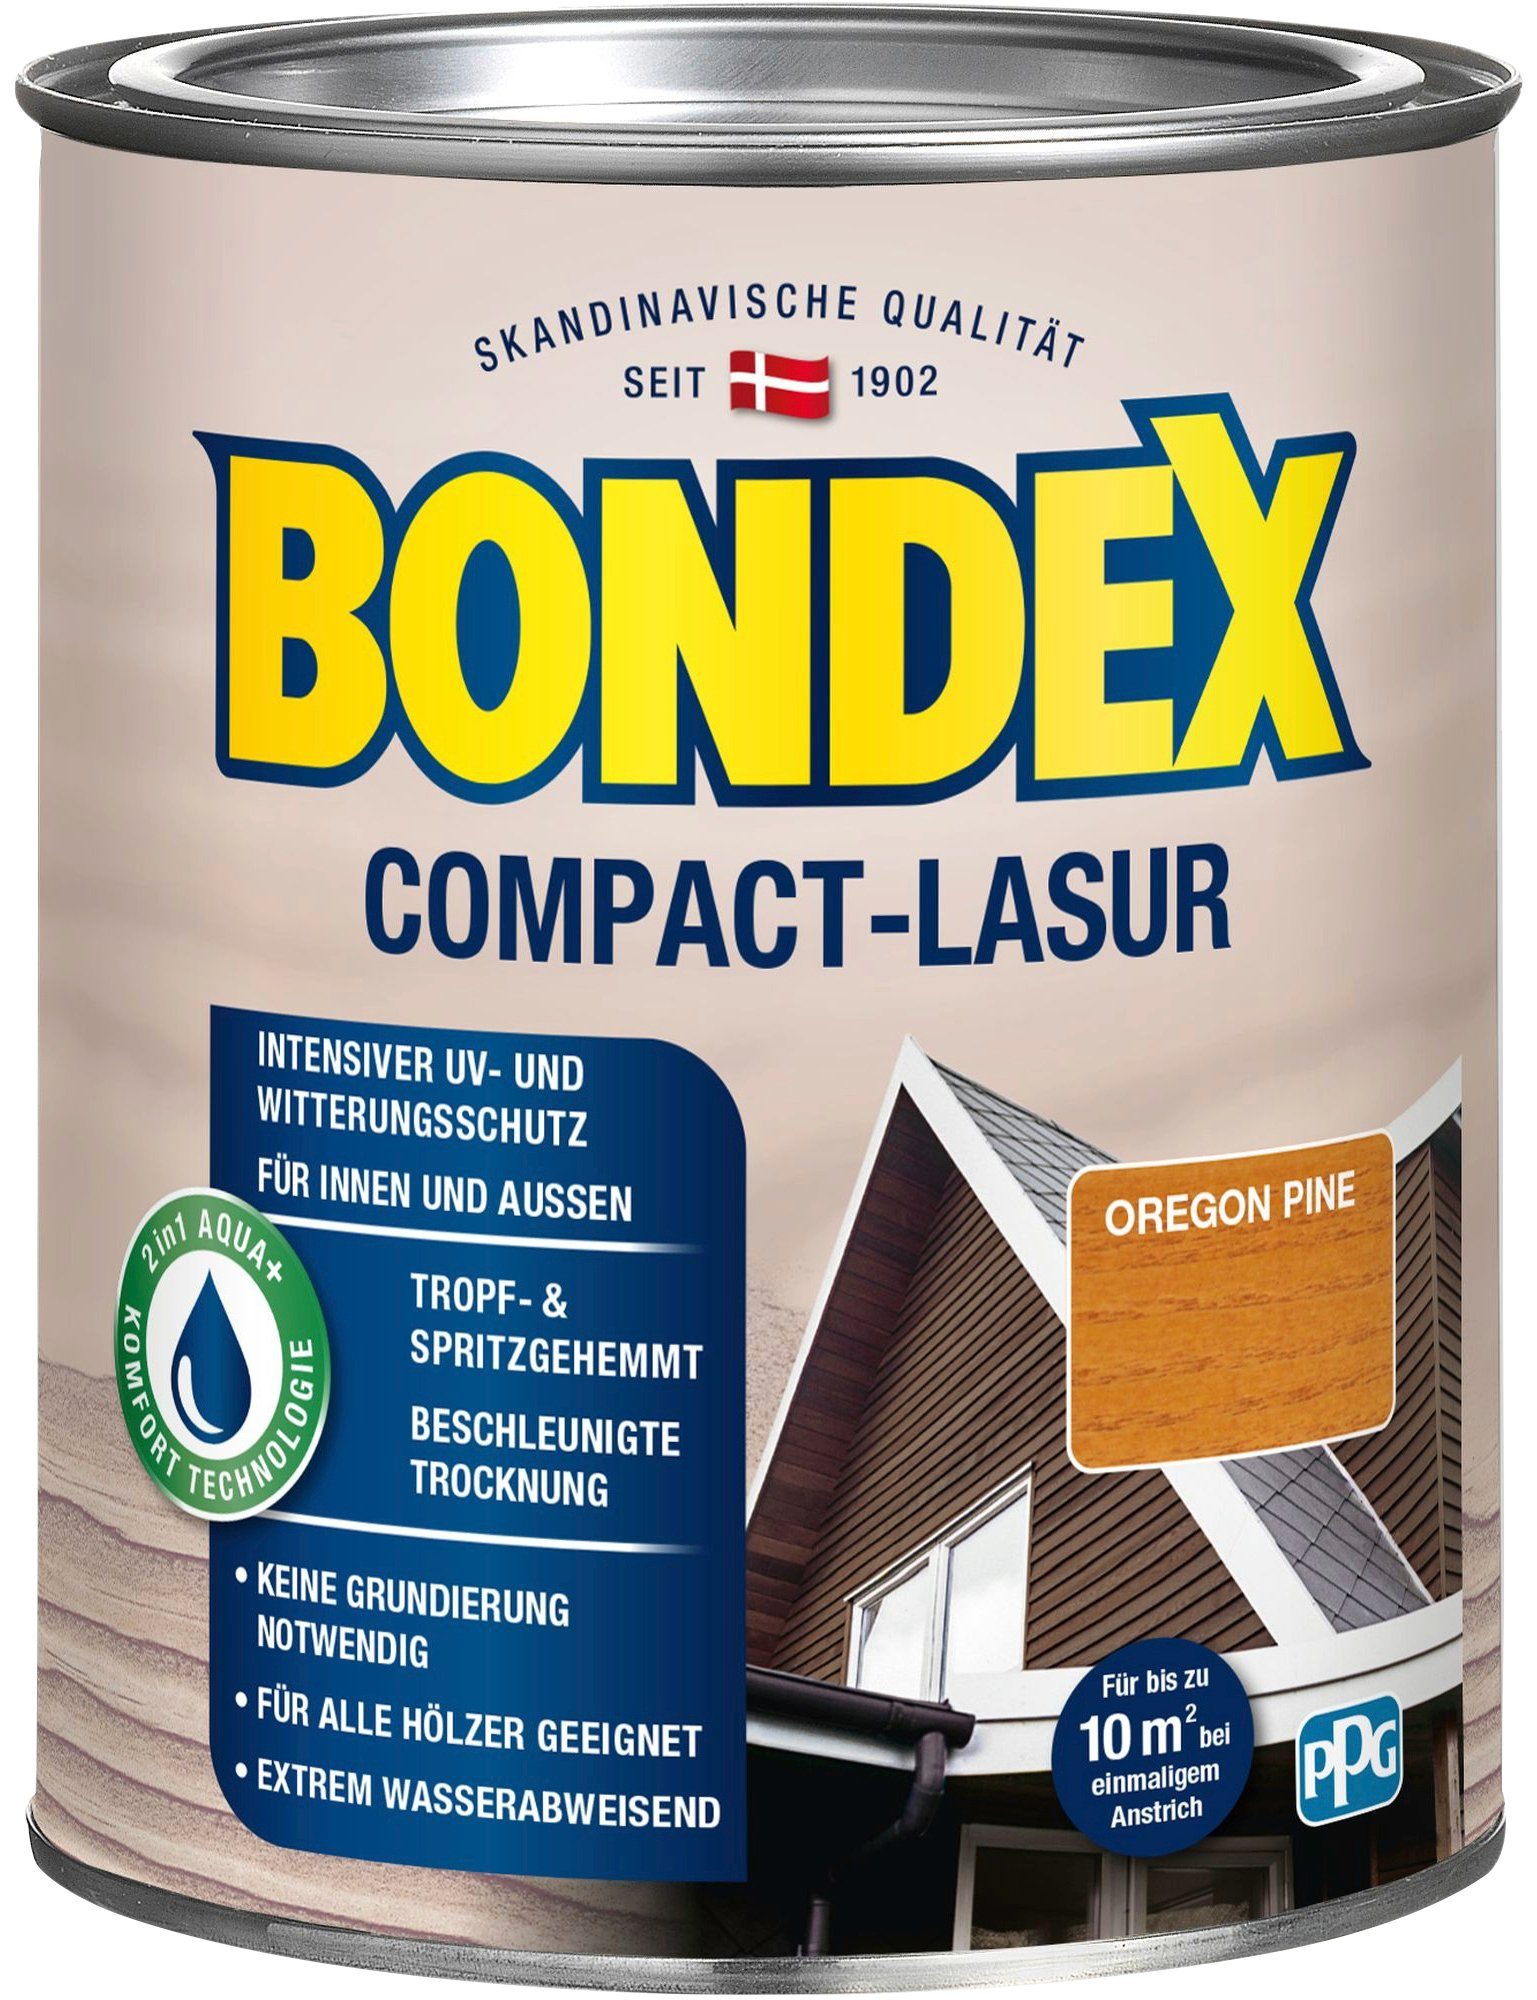 intensiver UV- & Holzschutzlasur wasserabweisend Bondex Pine Oregon Witterungsschutz, extrem COMPACT-LASUR,